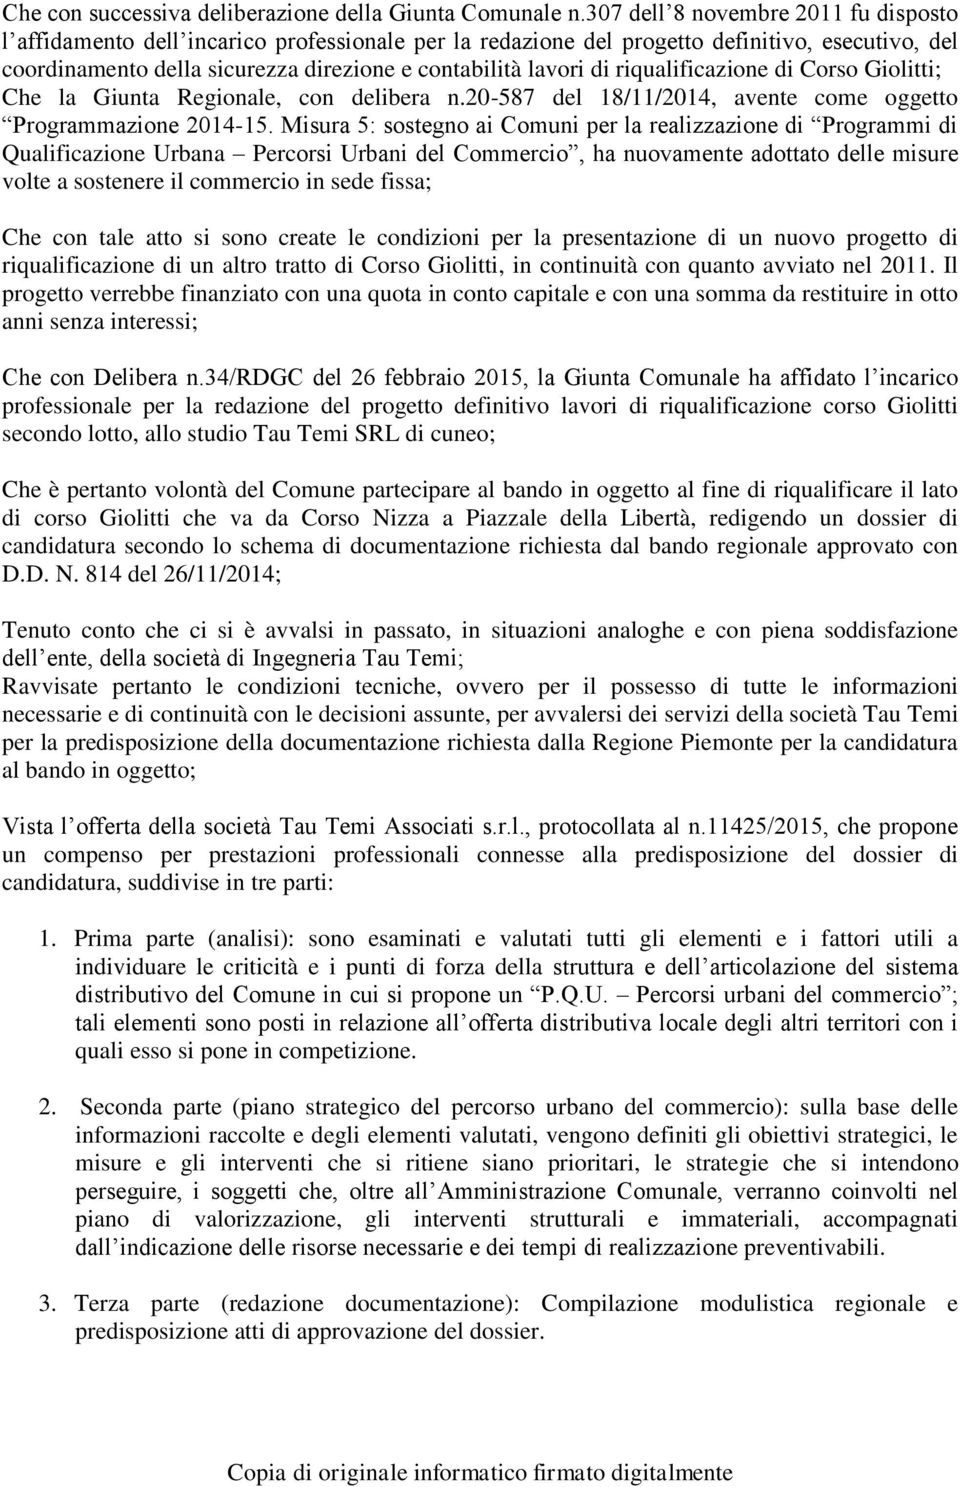 riqualificazione di Corso Giolitti; Che la Giunta Regionale, con delibera n.20-587 del 18/11/2014, avente come oggetto Programmazione 2014-15.